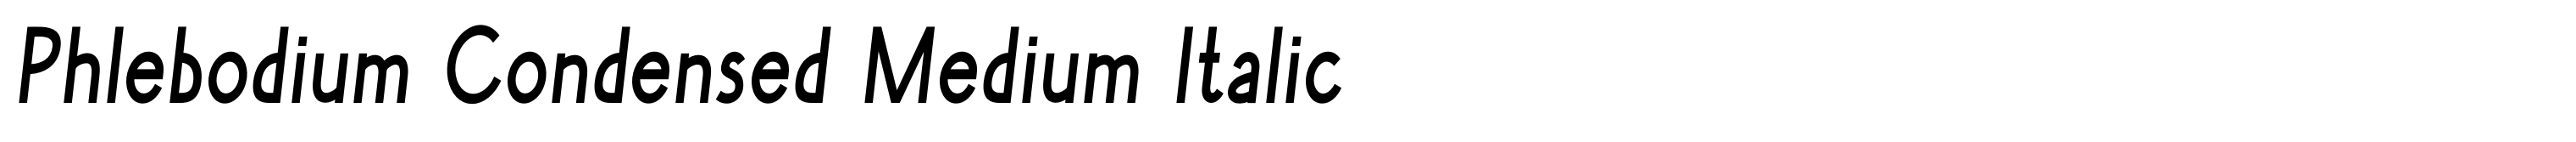 Phlebodium Condensed Medium Italic